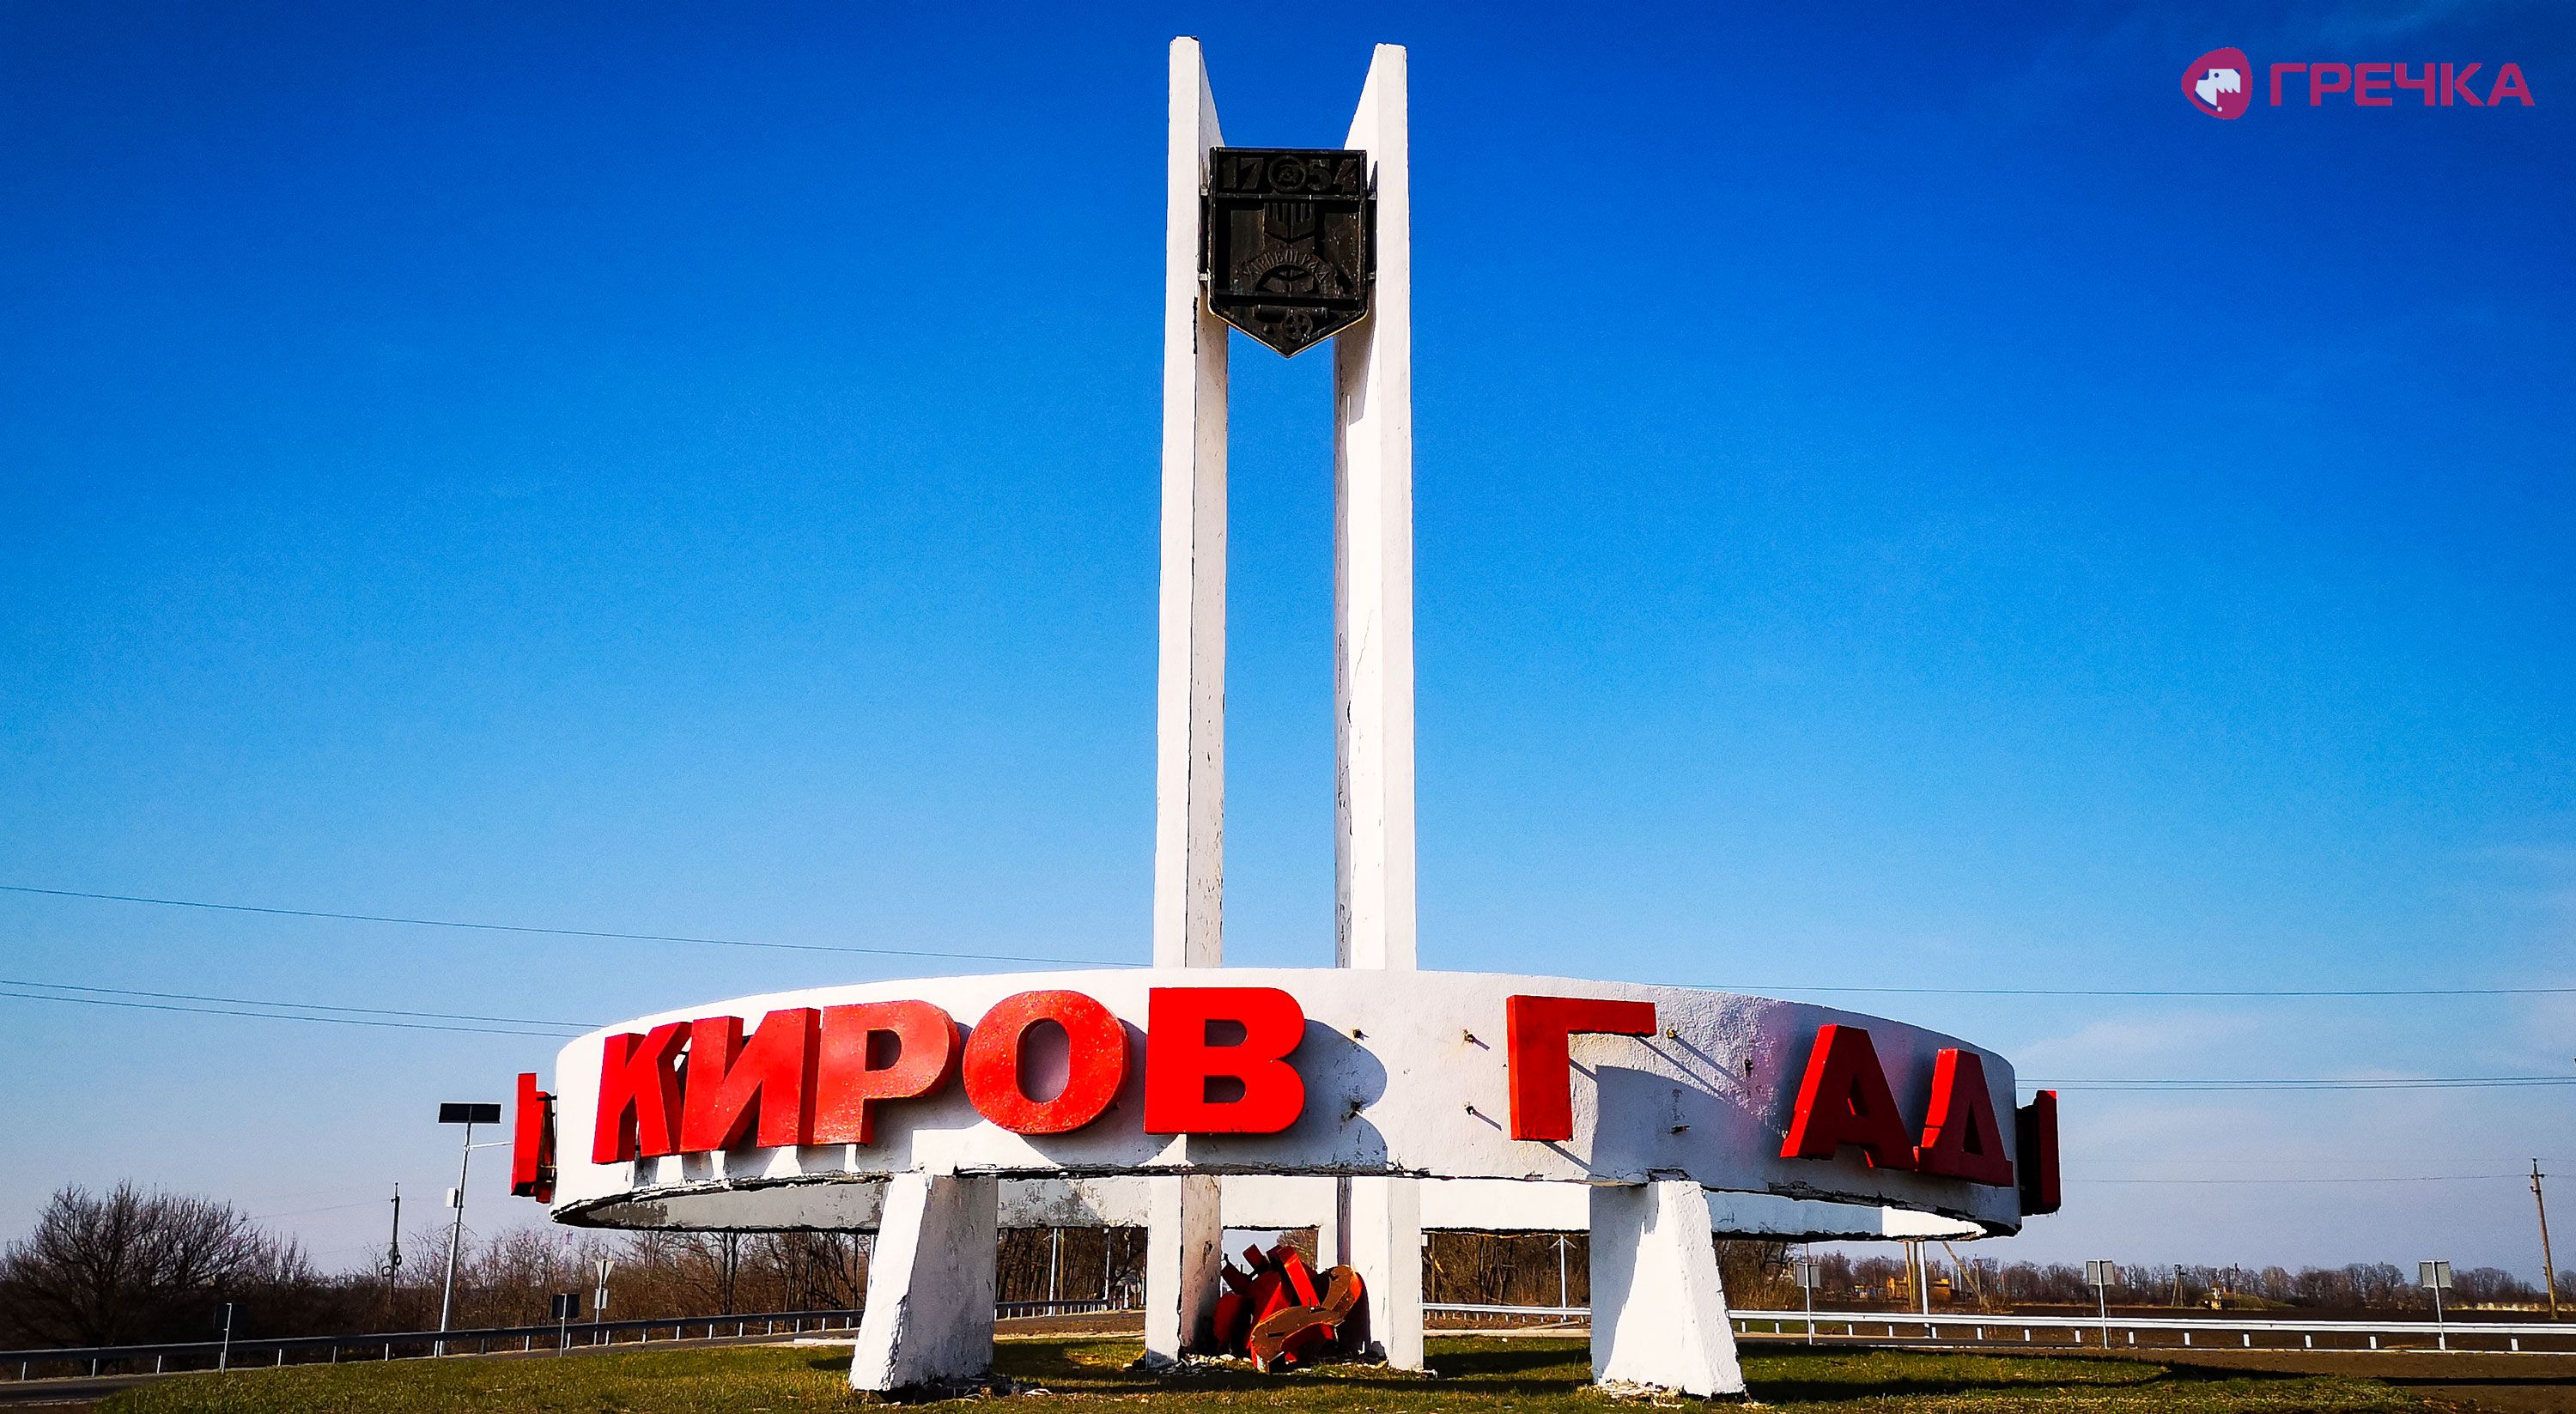 Декомунізоване місто Кропивницький мало стару назву на в'їзді.